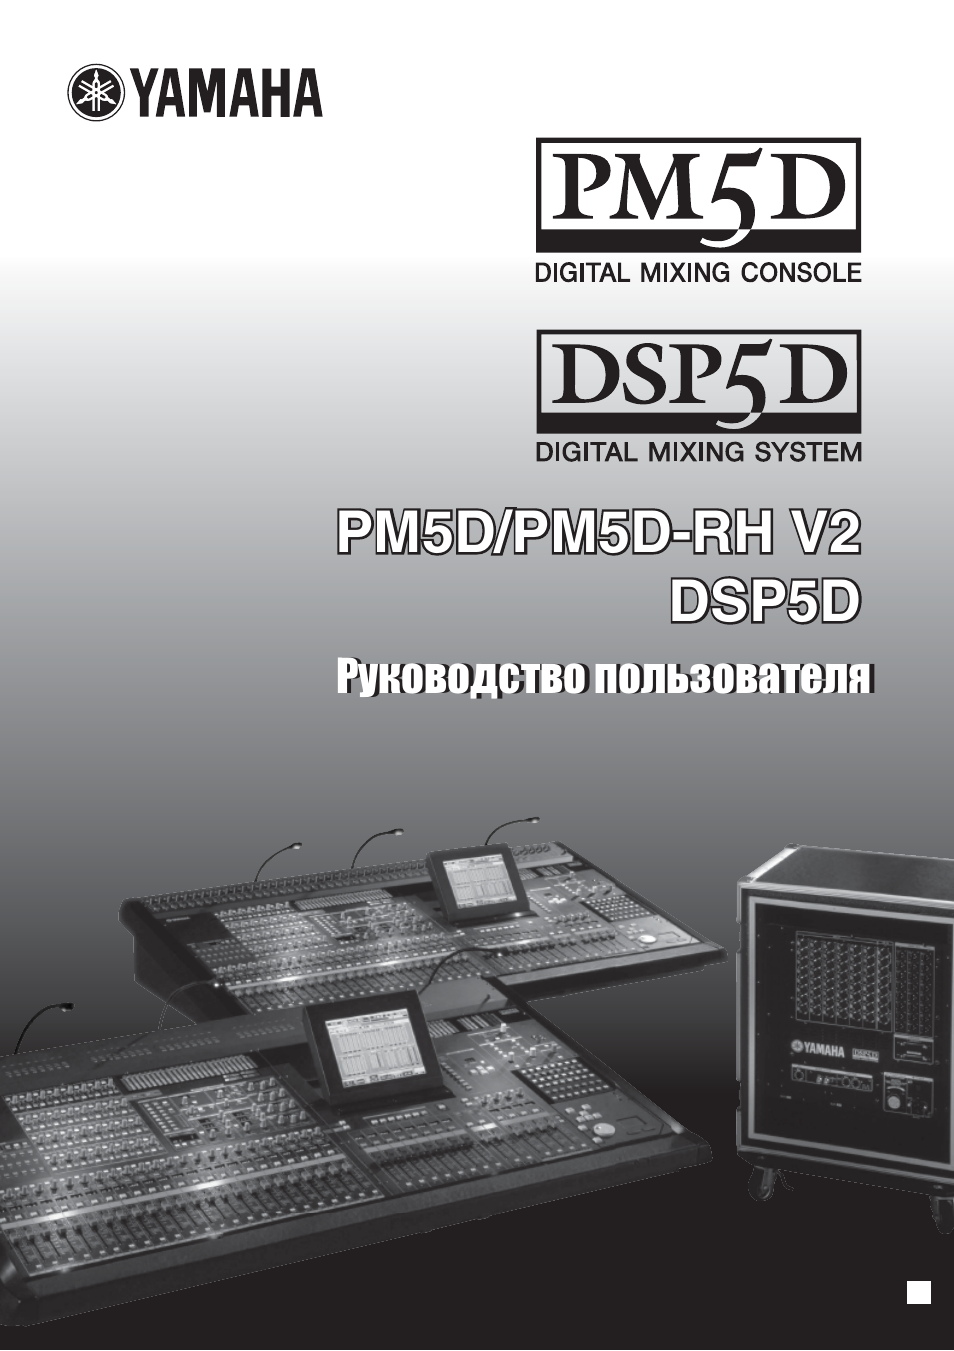 Инструкция по эксплуатации Yamaha DSP5D | 341 cтраница